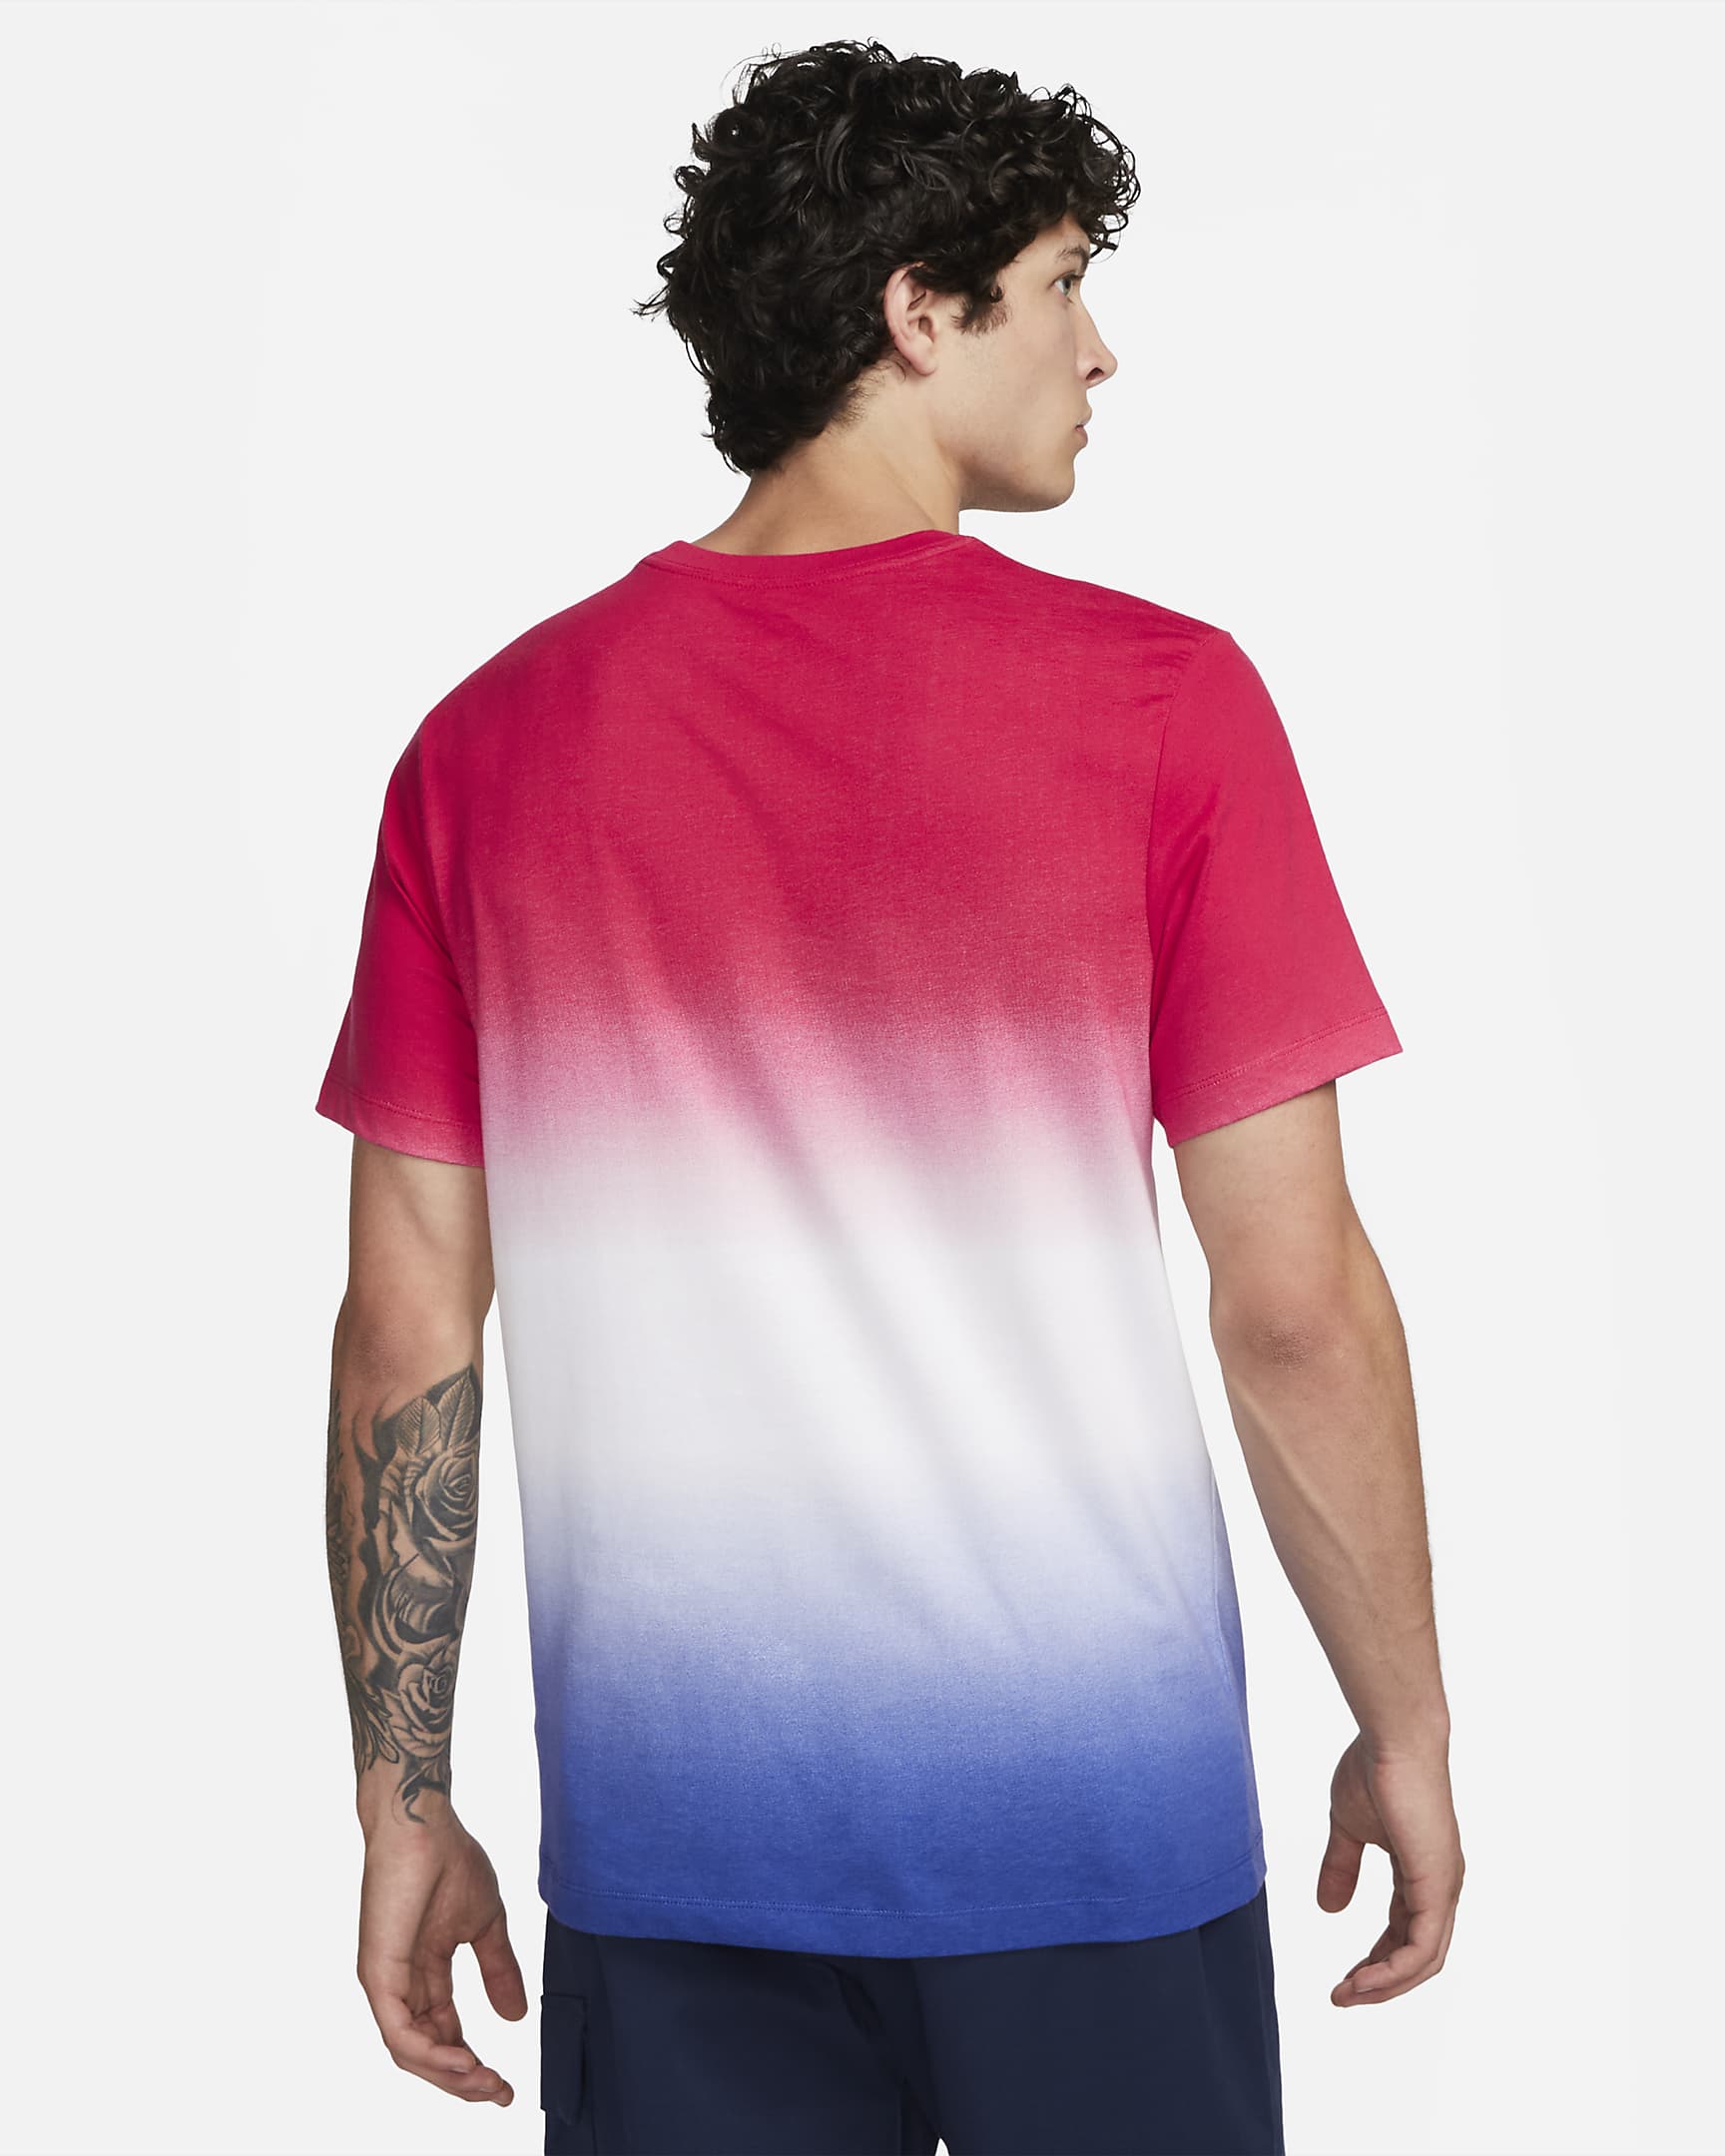 FC Barcelona Crest Men's Nike Soccer T-Shirt. Nike.com